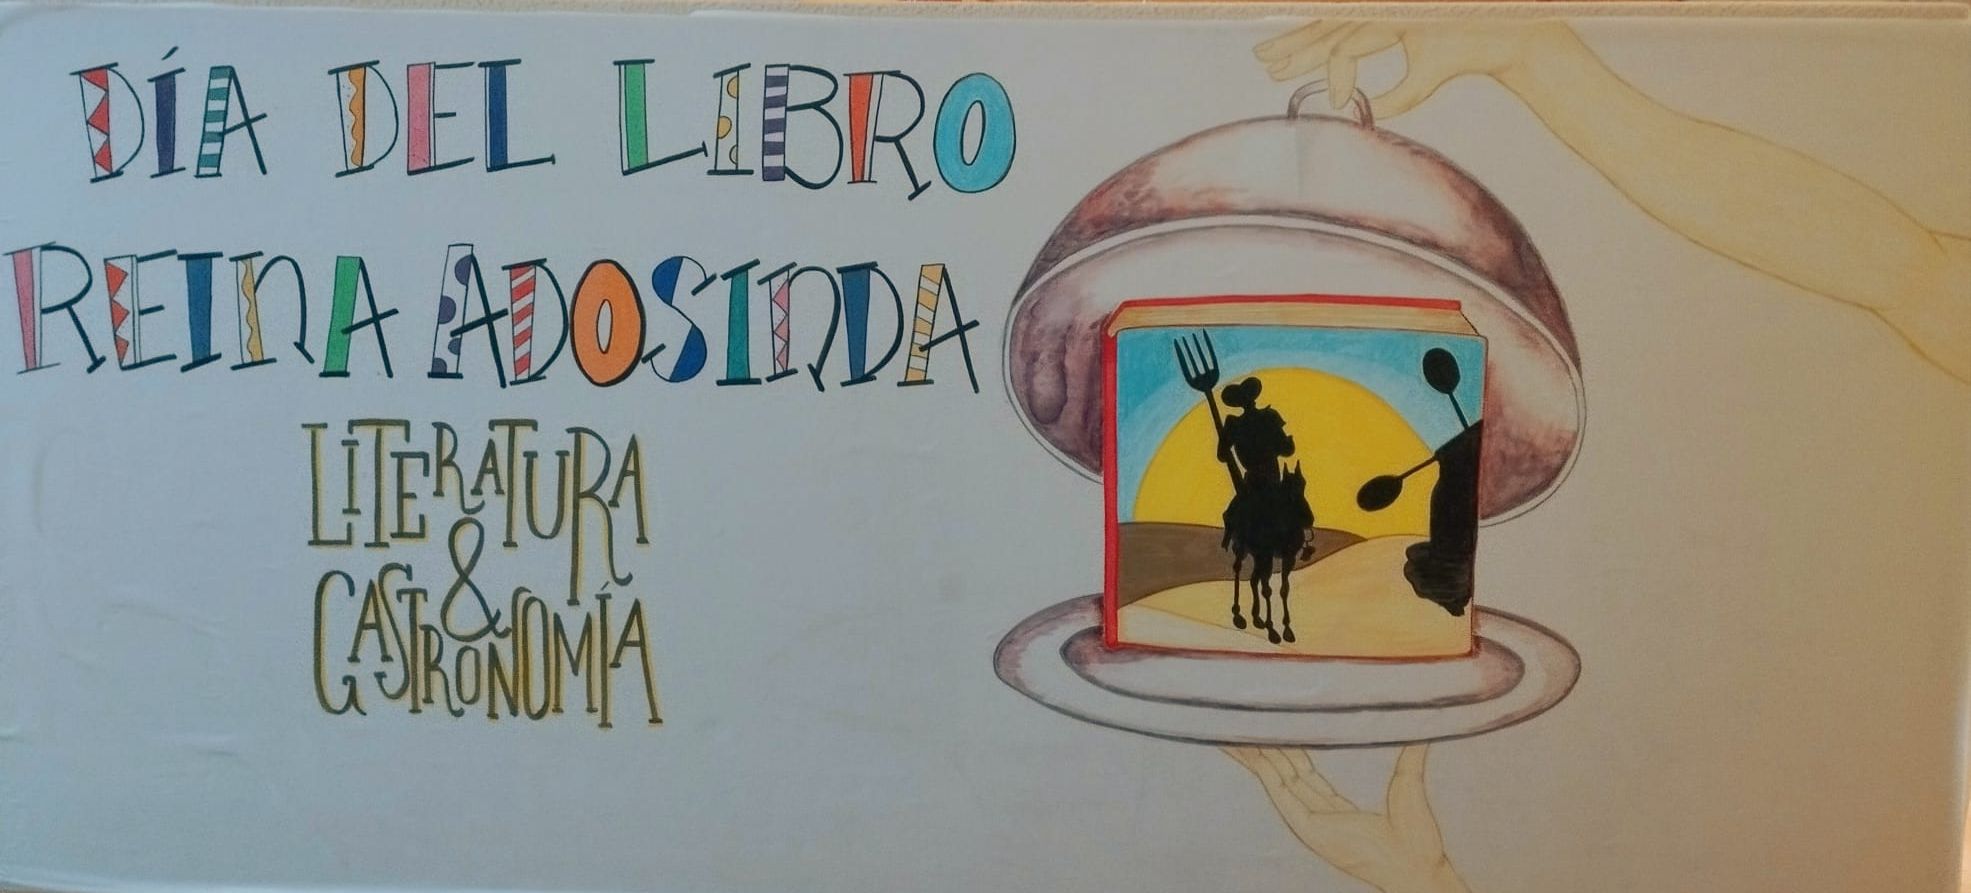 Pote asturiano, queso, uvas y chocolate para celebrar el Día del Libro en el colegio Reina Adosinda de Pravia